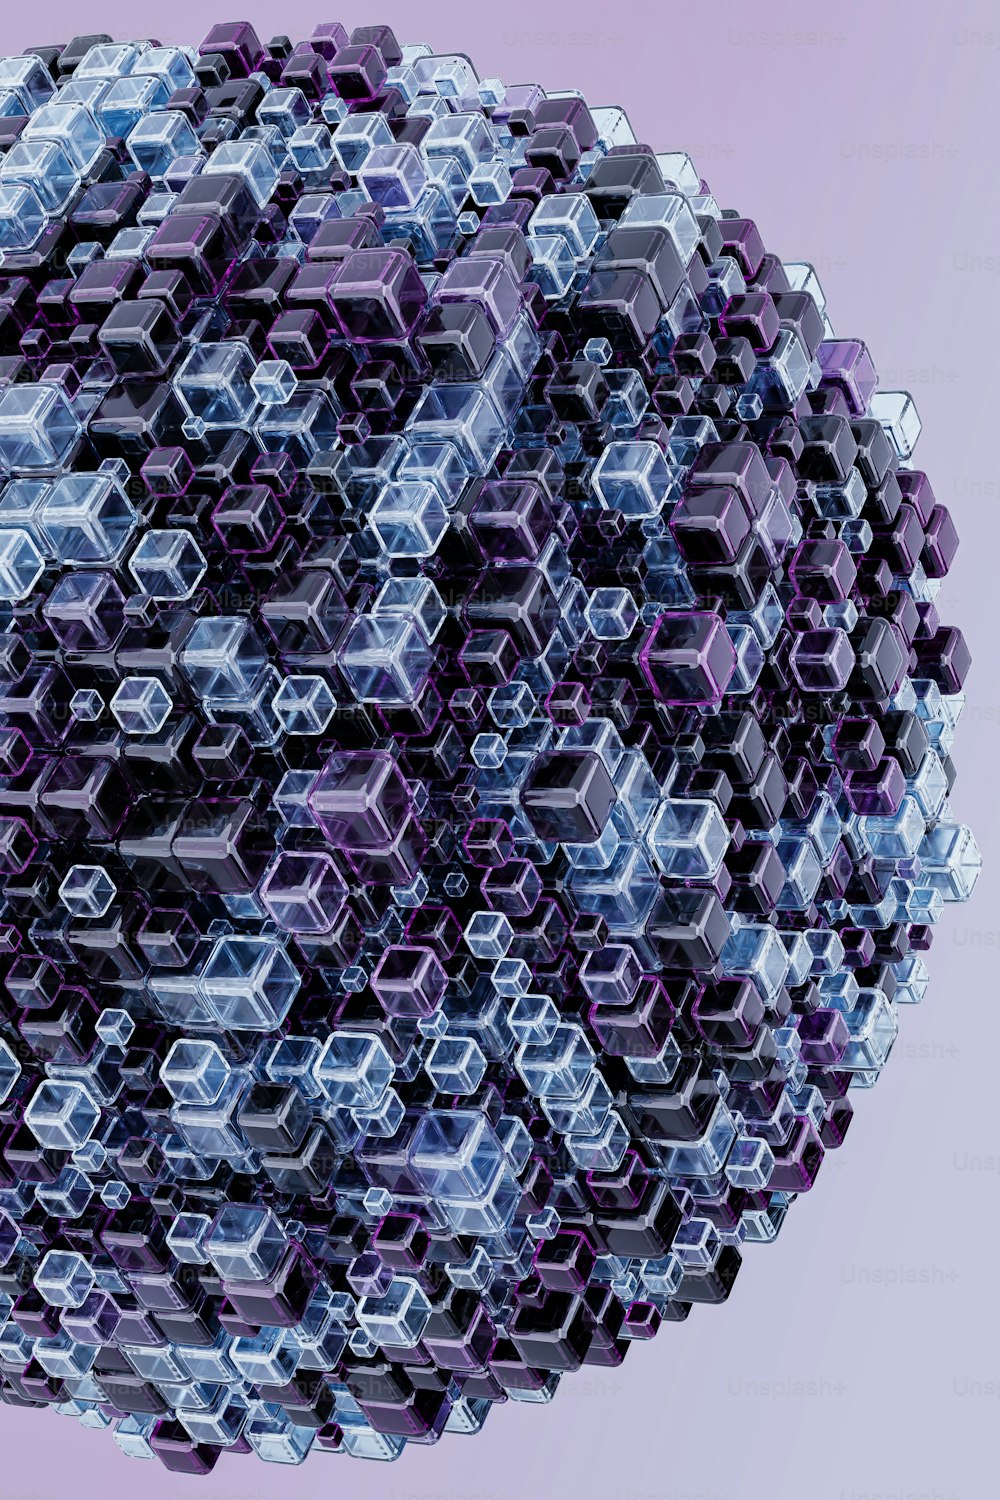 Una esfera hecha de cubos hexagonales sobre un fondo púrpura